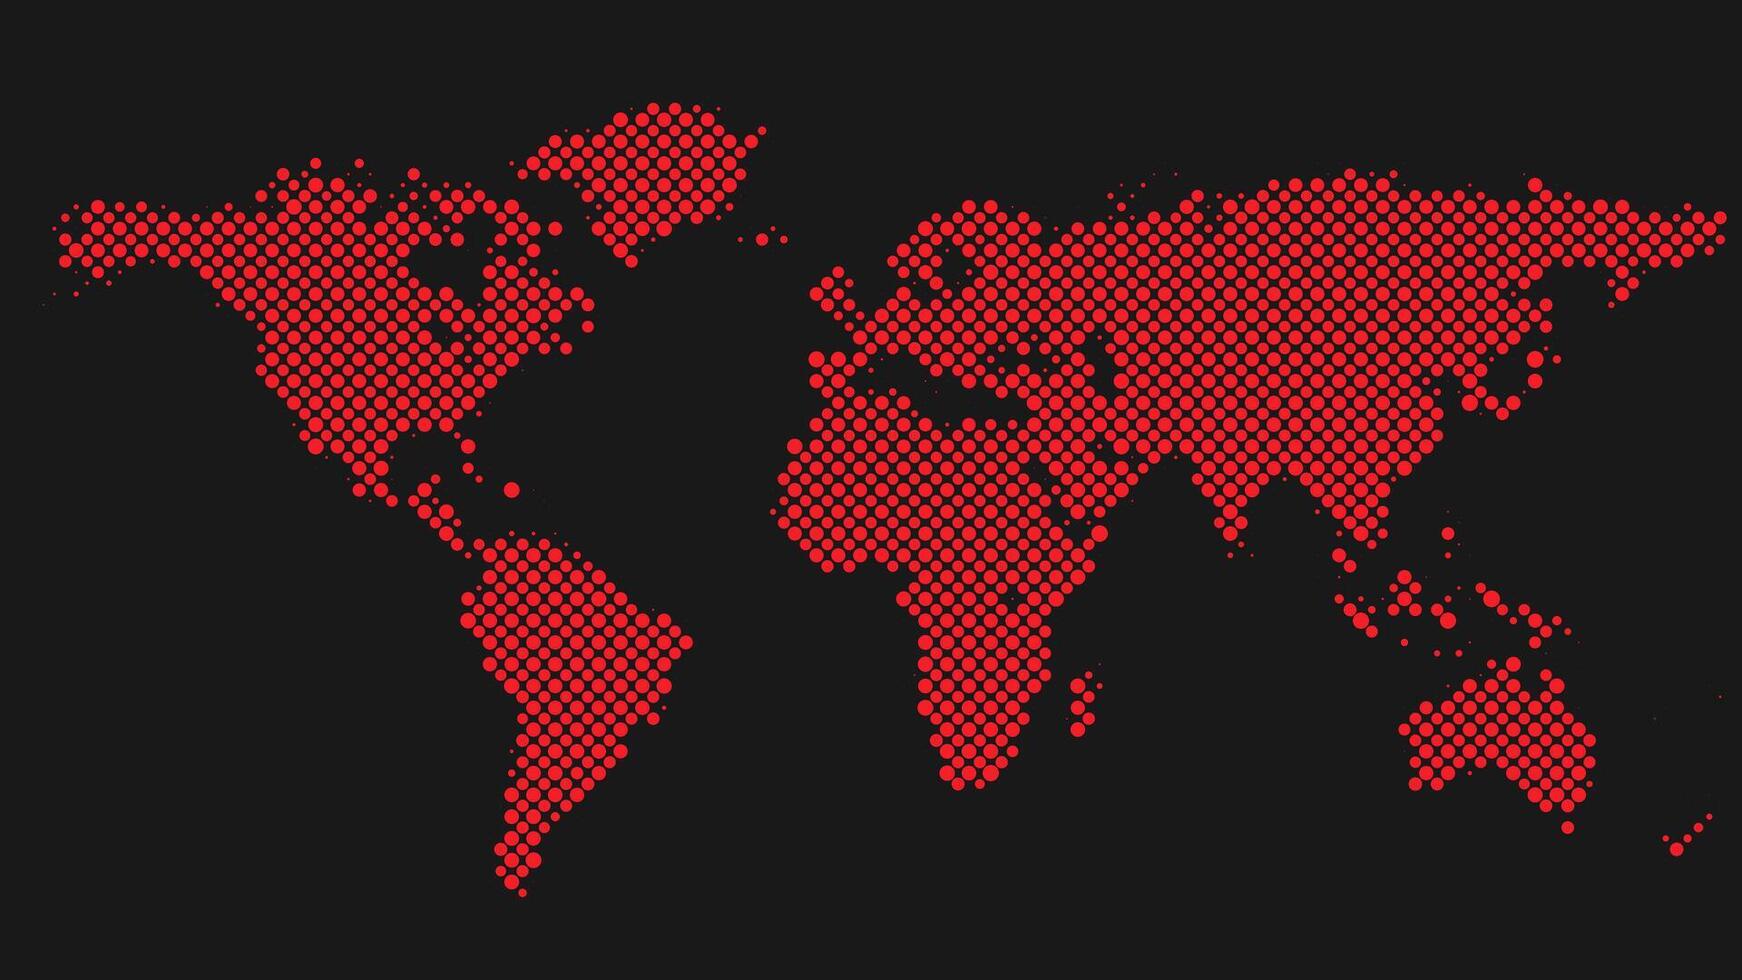 trama de semitonos mundo mapa antecedentes - vector punto modelo gráfico diseño